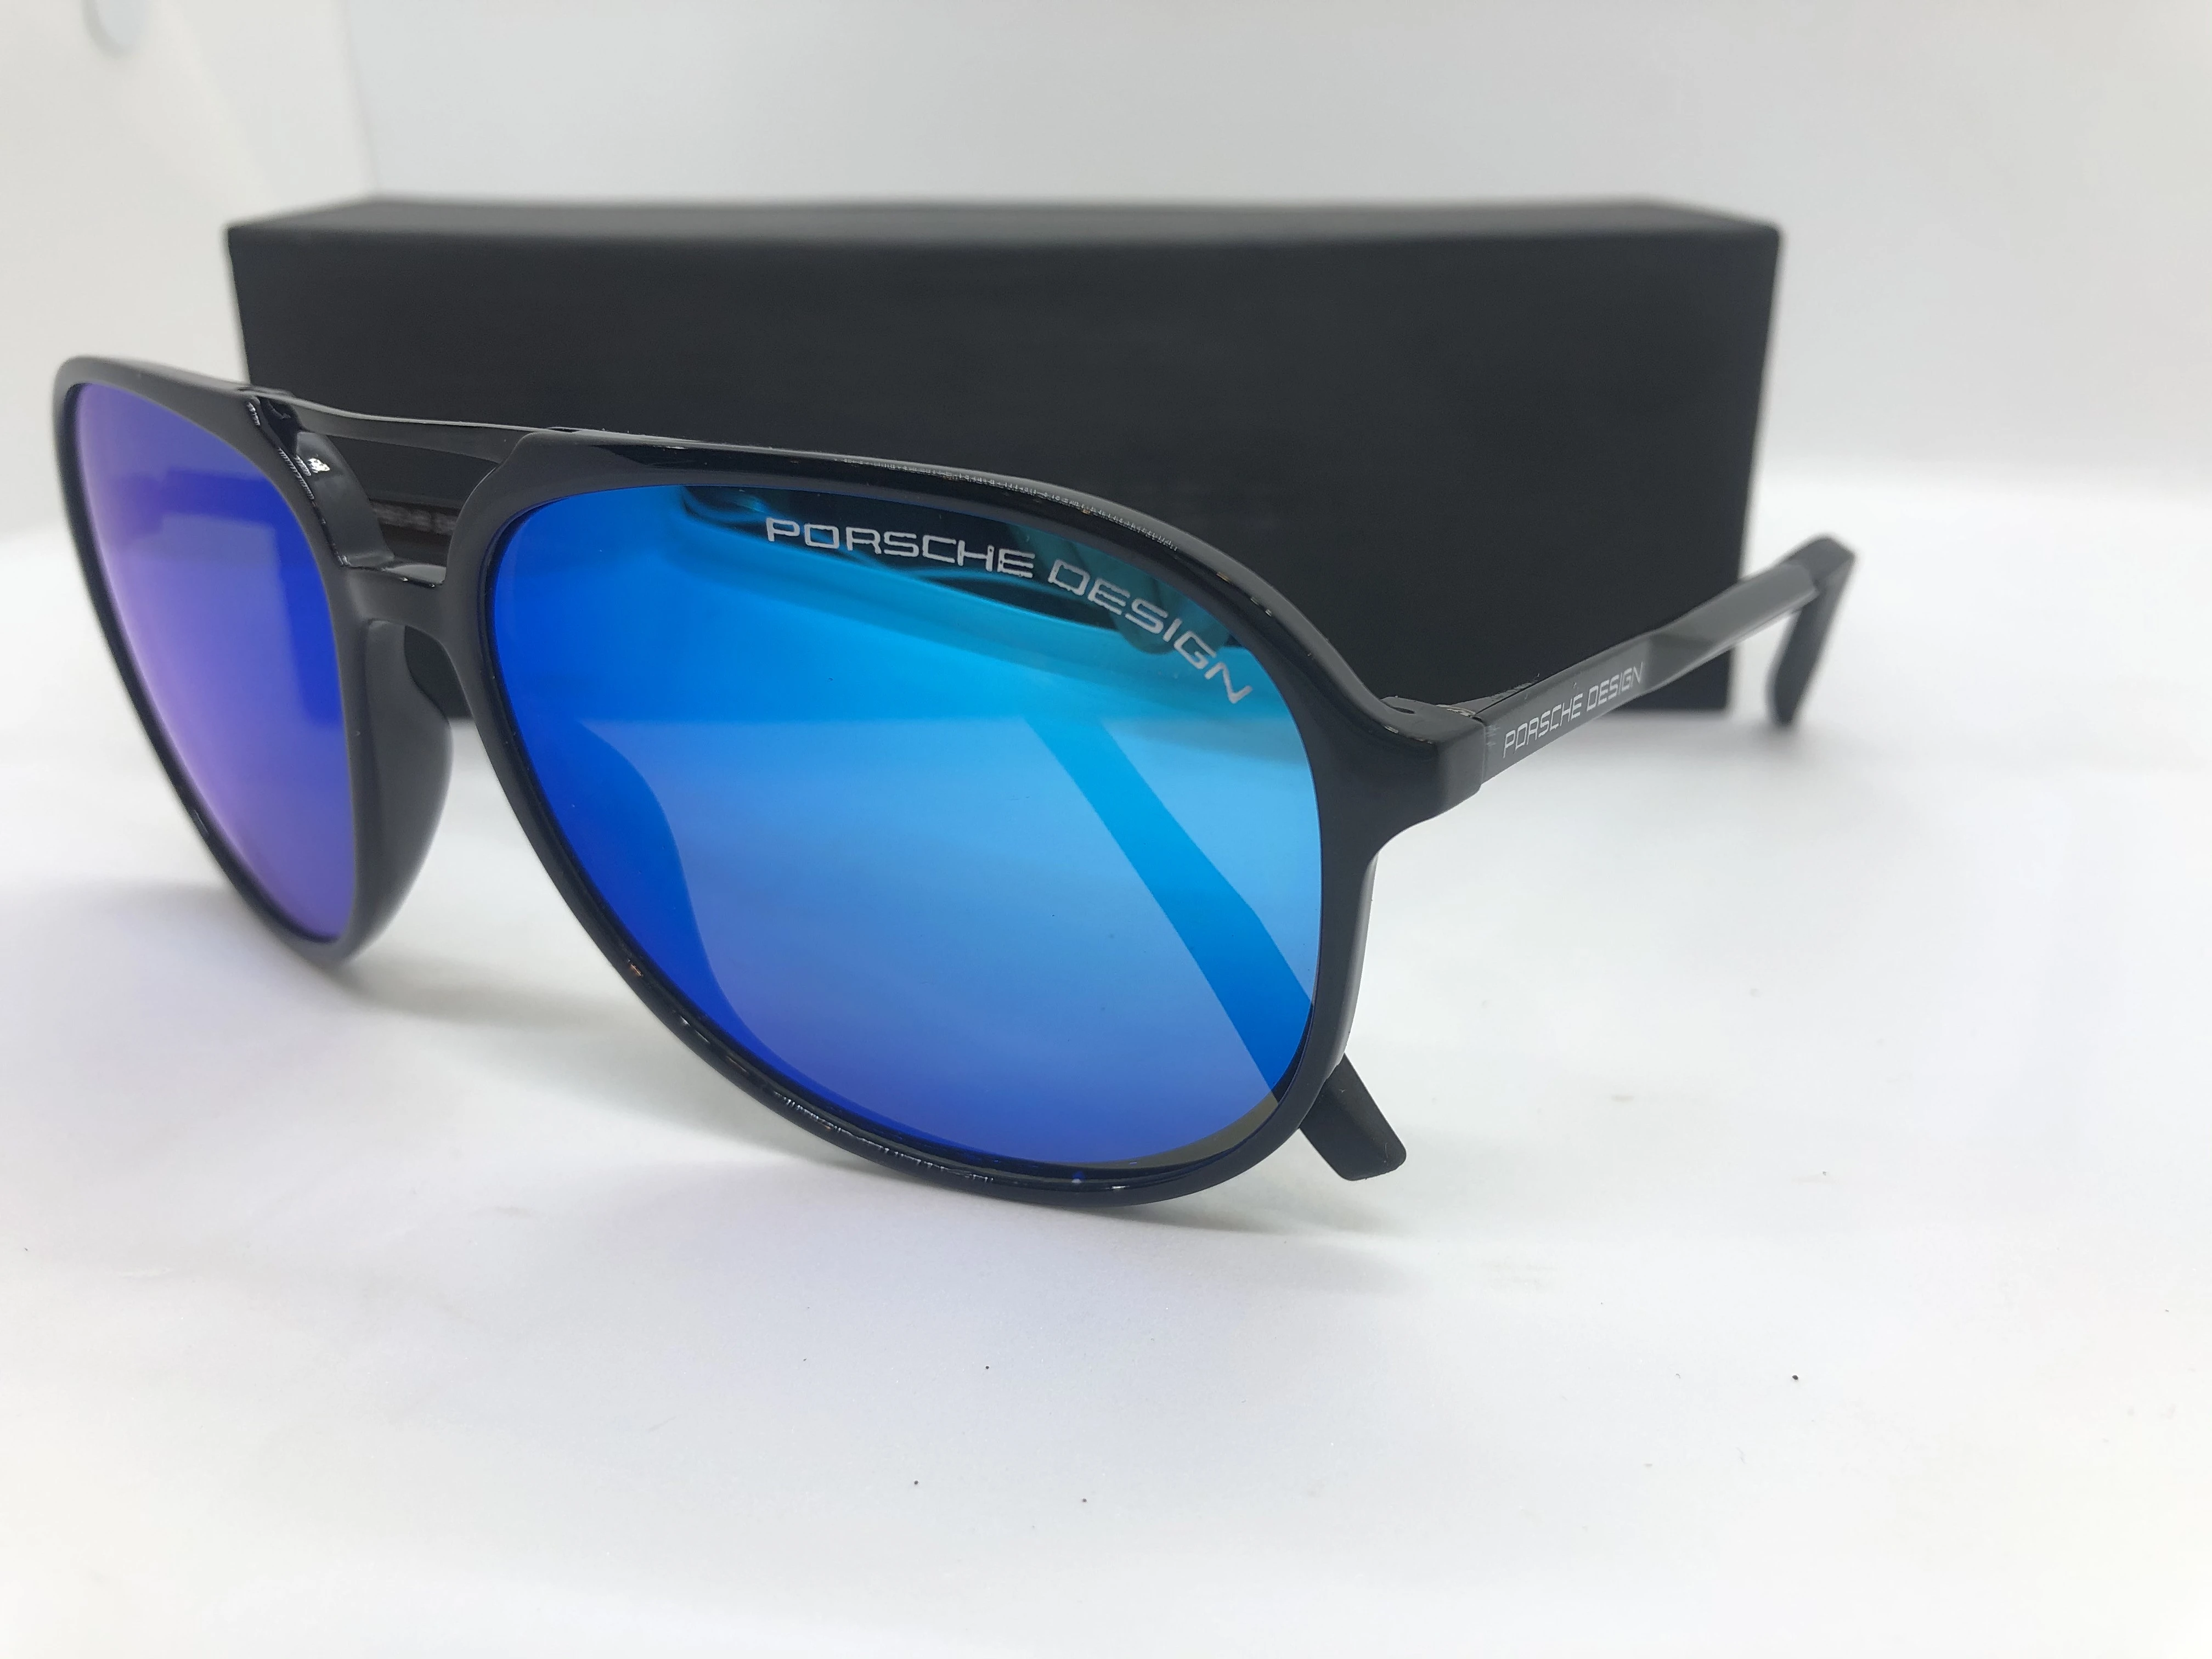 نظارة شمسية - من تصميم بورش - بإطاراسود بولي كاربونات - وعدسات زرقاء - وزراع معدن سوداء - للرجال